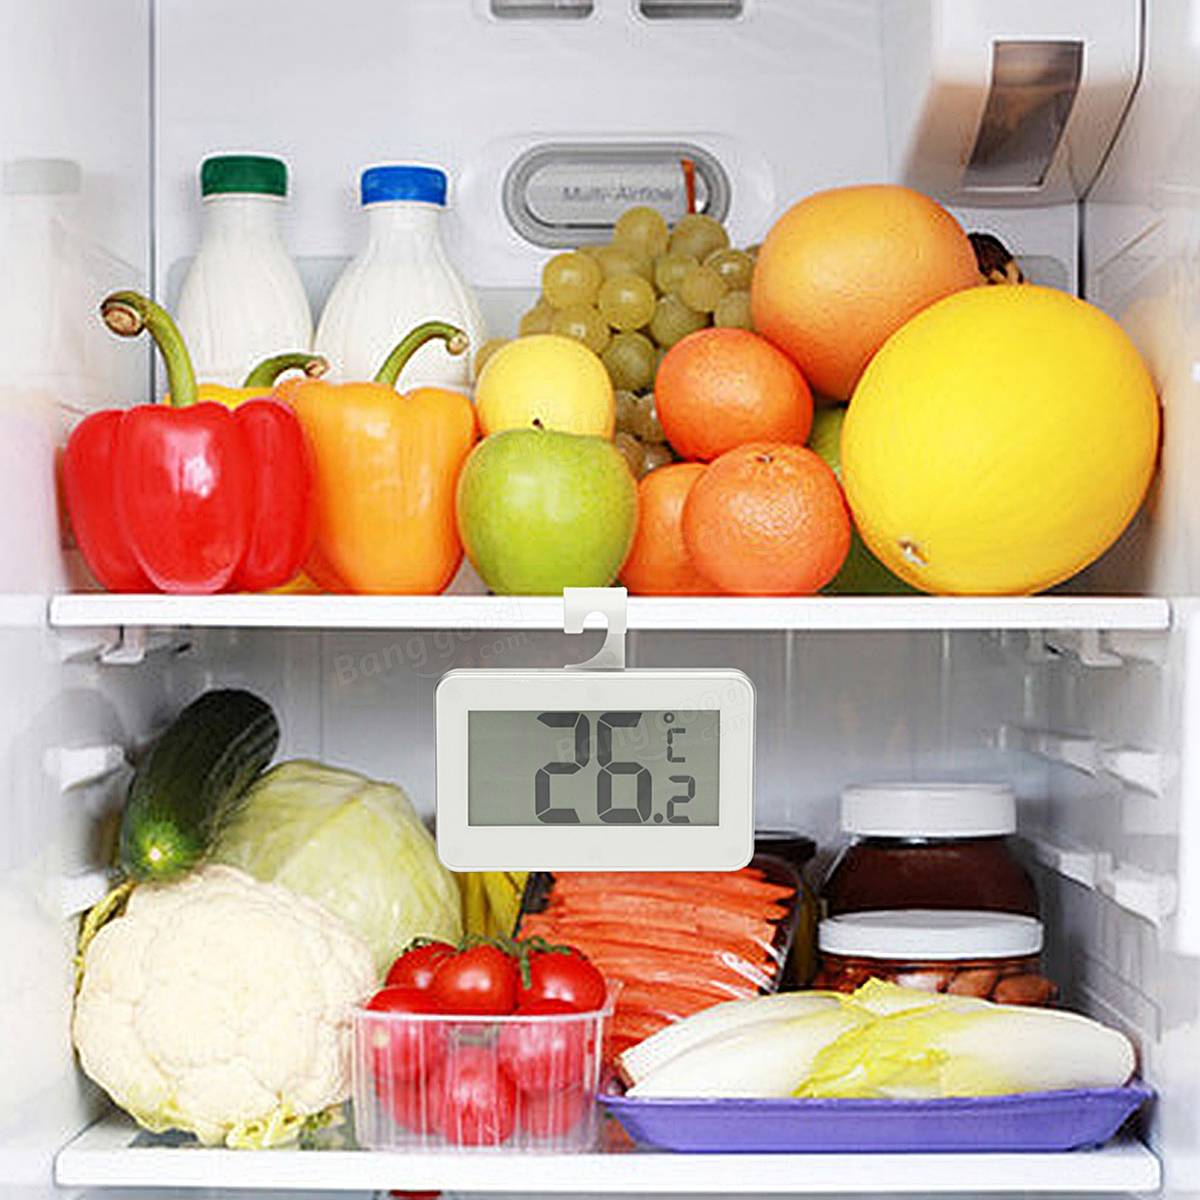 There is some fruit. Скоропортящиеся продукты. Сок в холодильнике. Овощи в холодильнике с глазами. Картинки скоропортящихся продуктов.